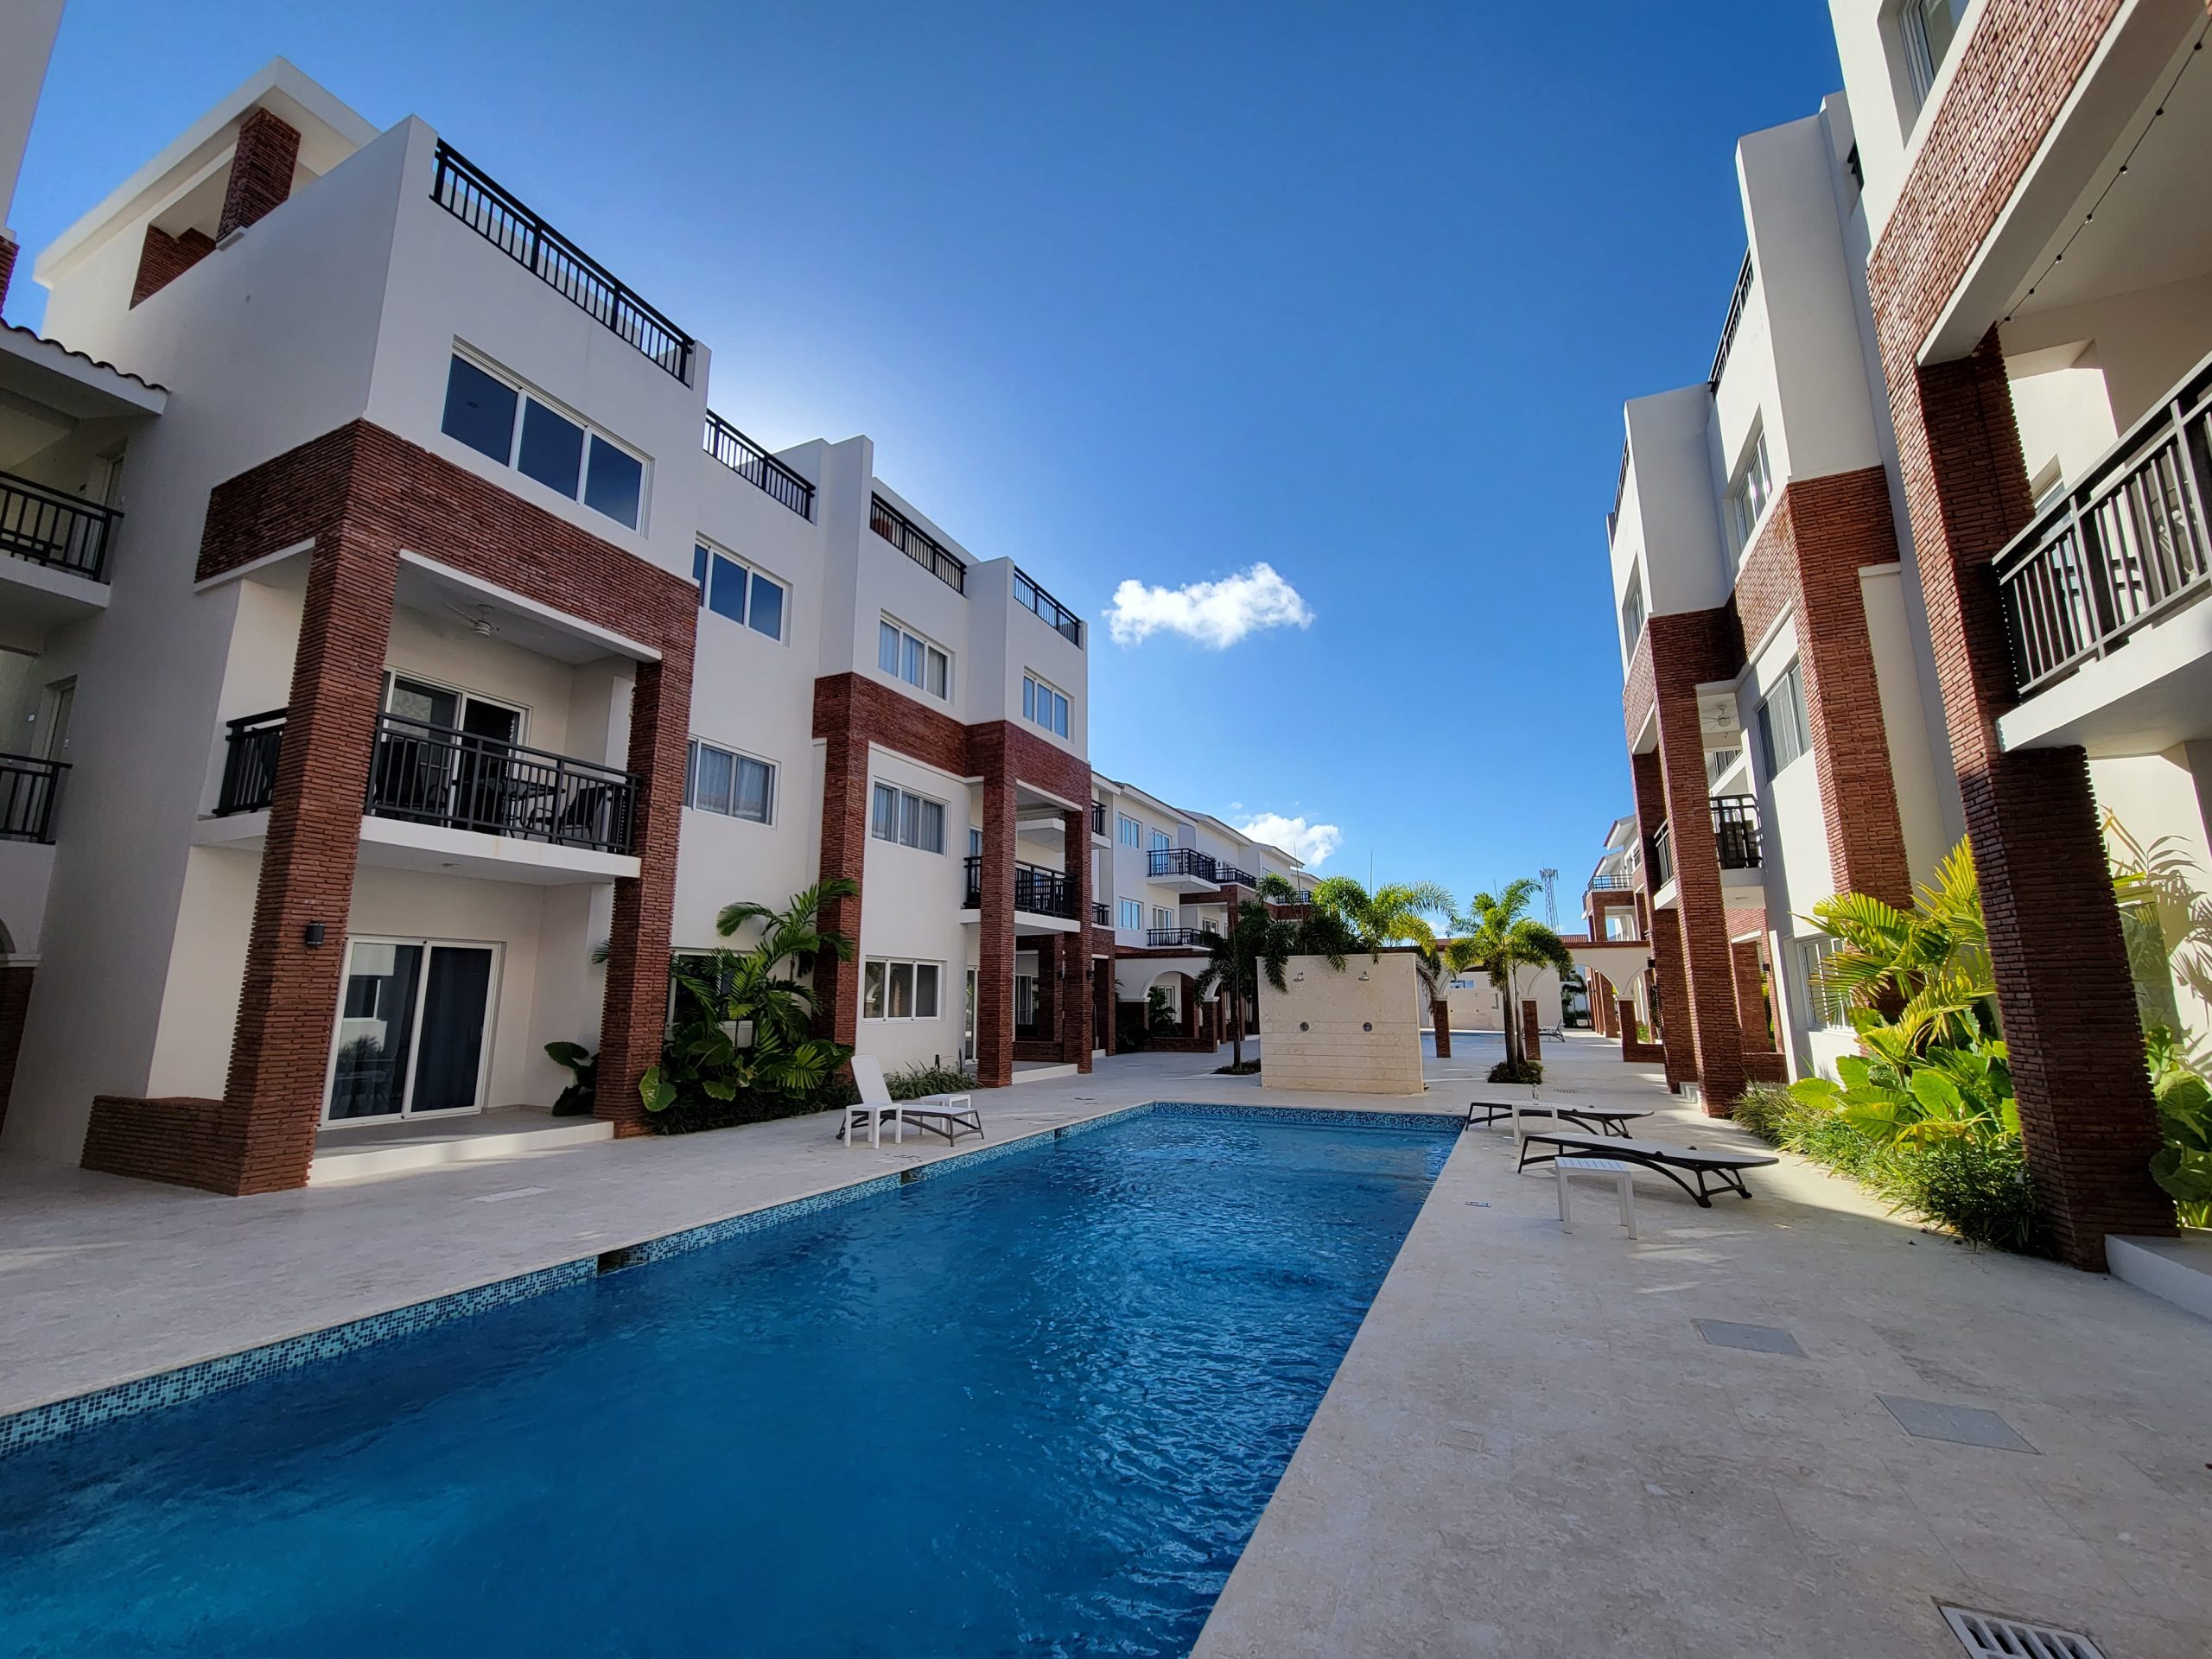 Apartamento en Punta Cana de 2 habitaciones a 10 minutos caminando de la playa